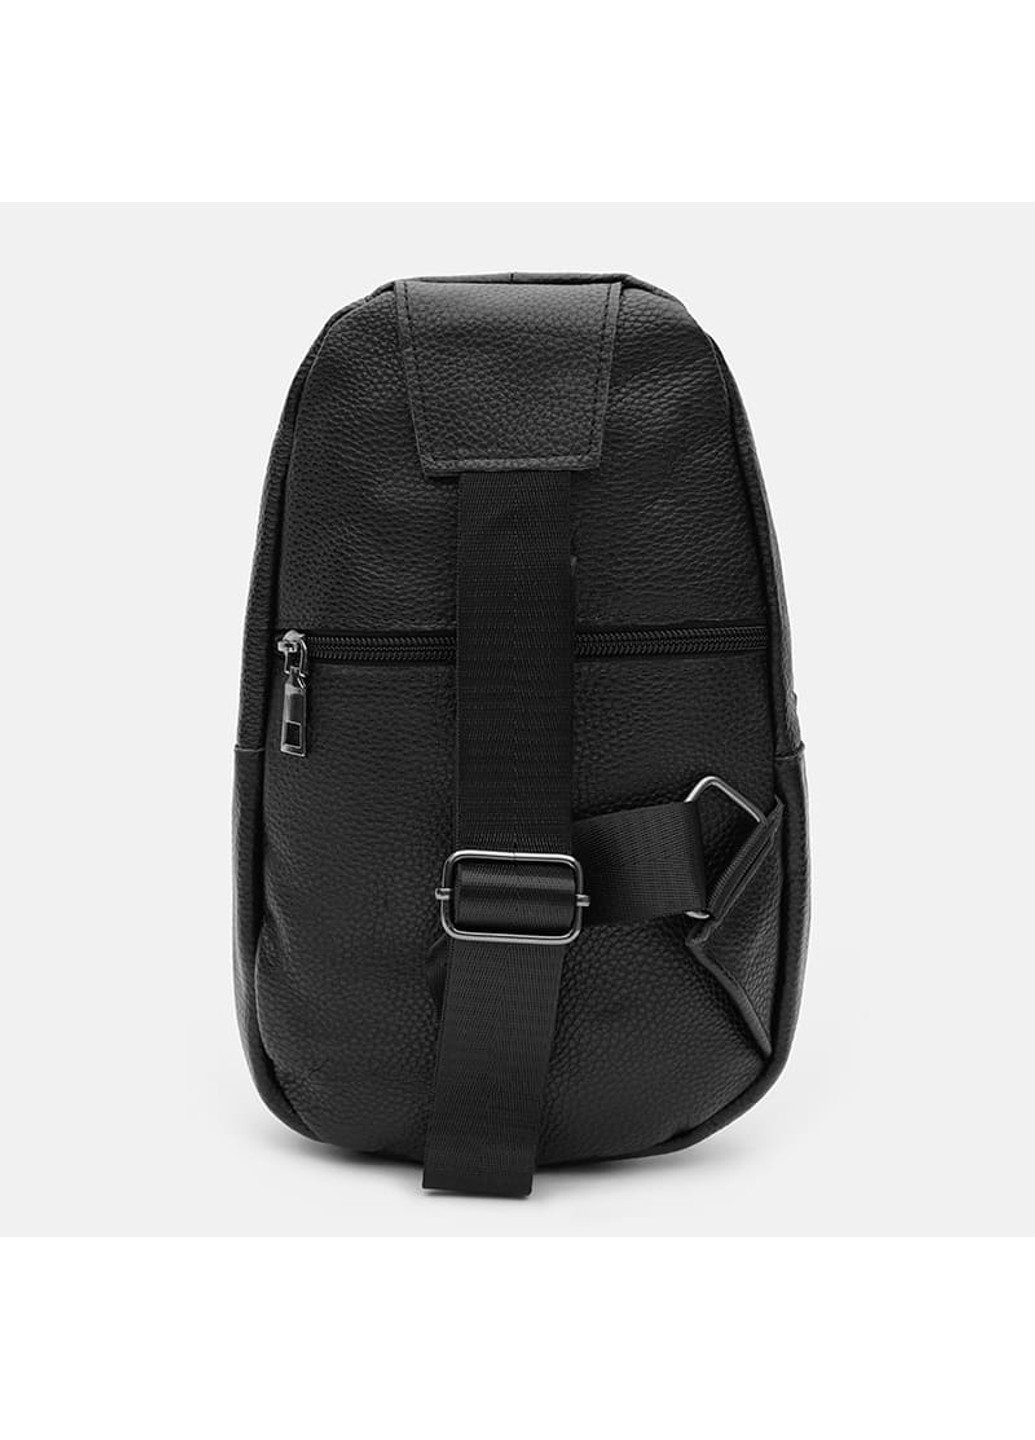 Мужской кожаный рюкзак K1087bl-black Keizer (266143538)